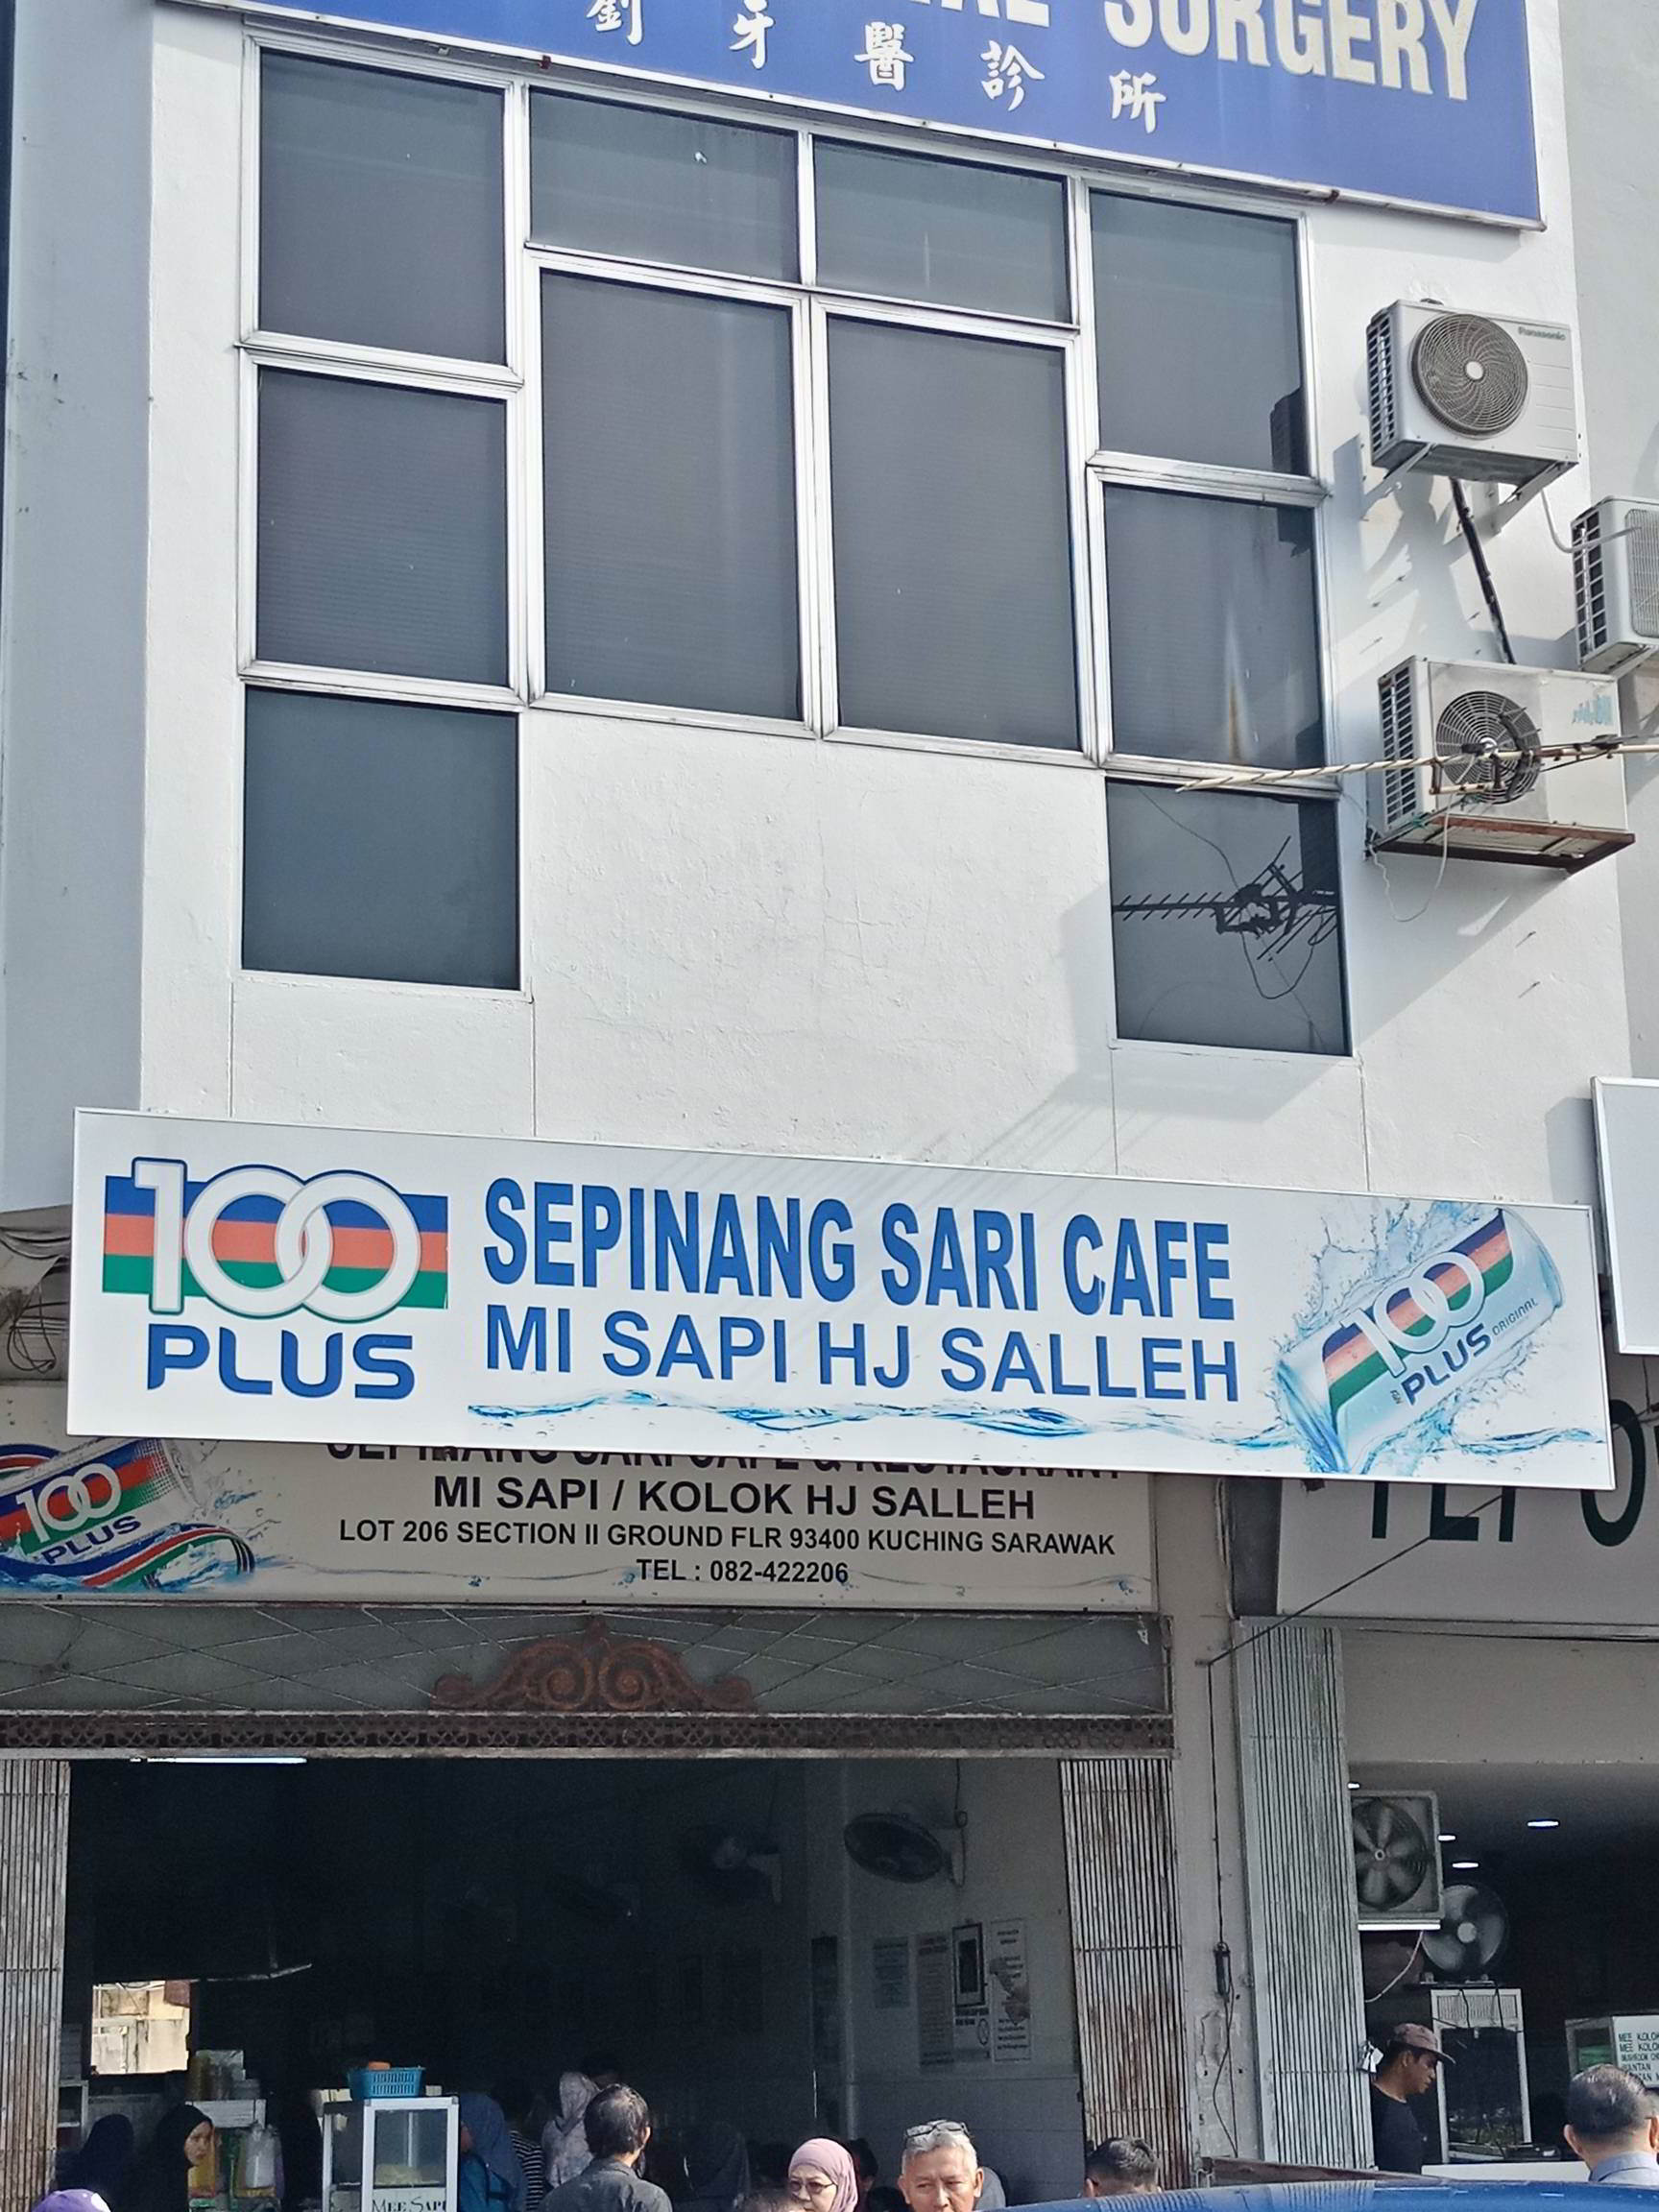 Sepinang Sari Cafe and Restaurant